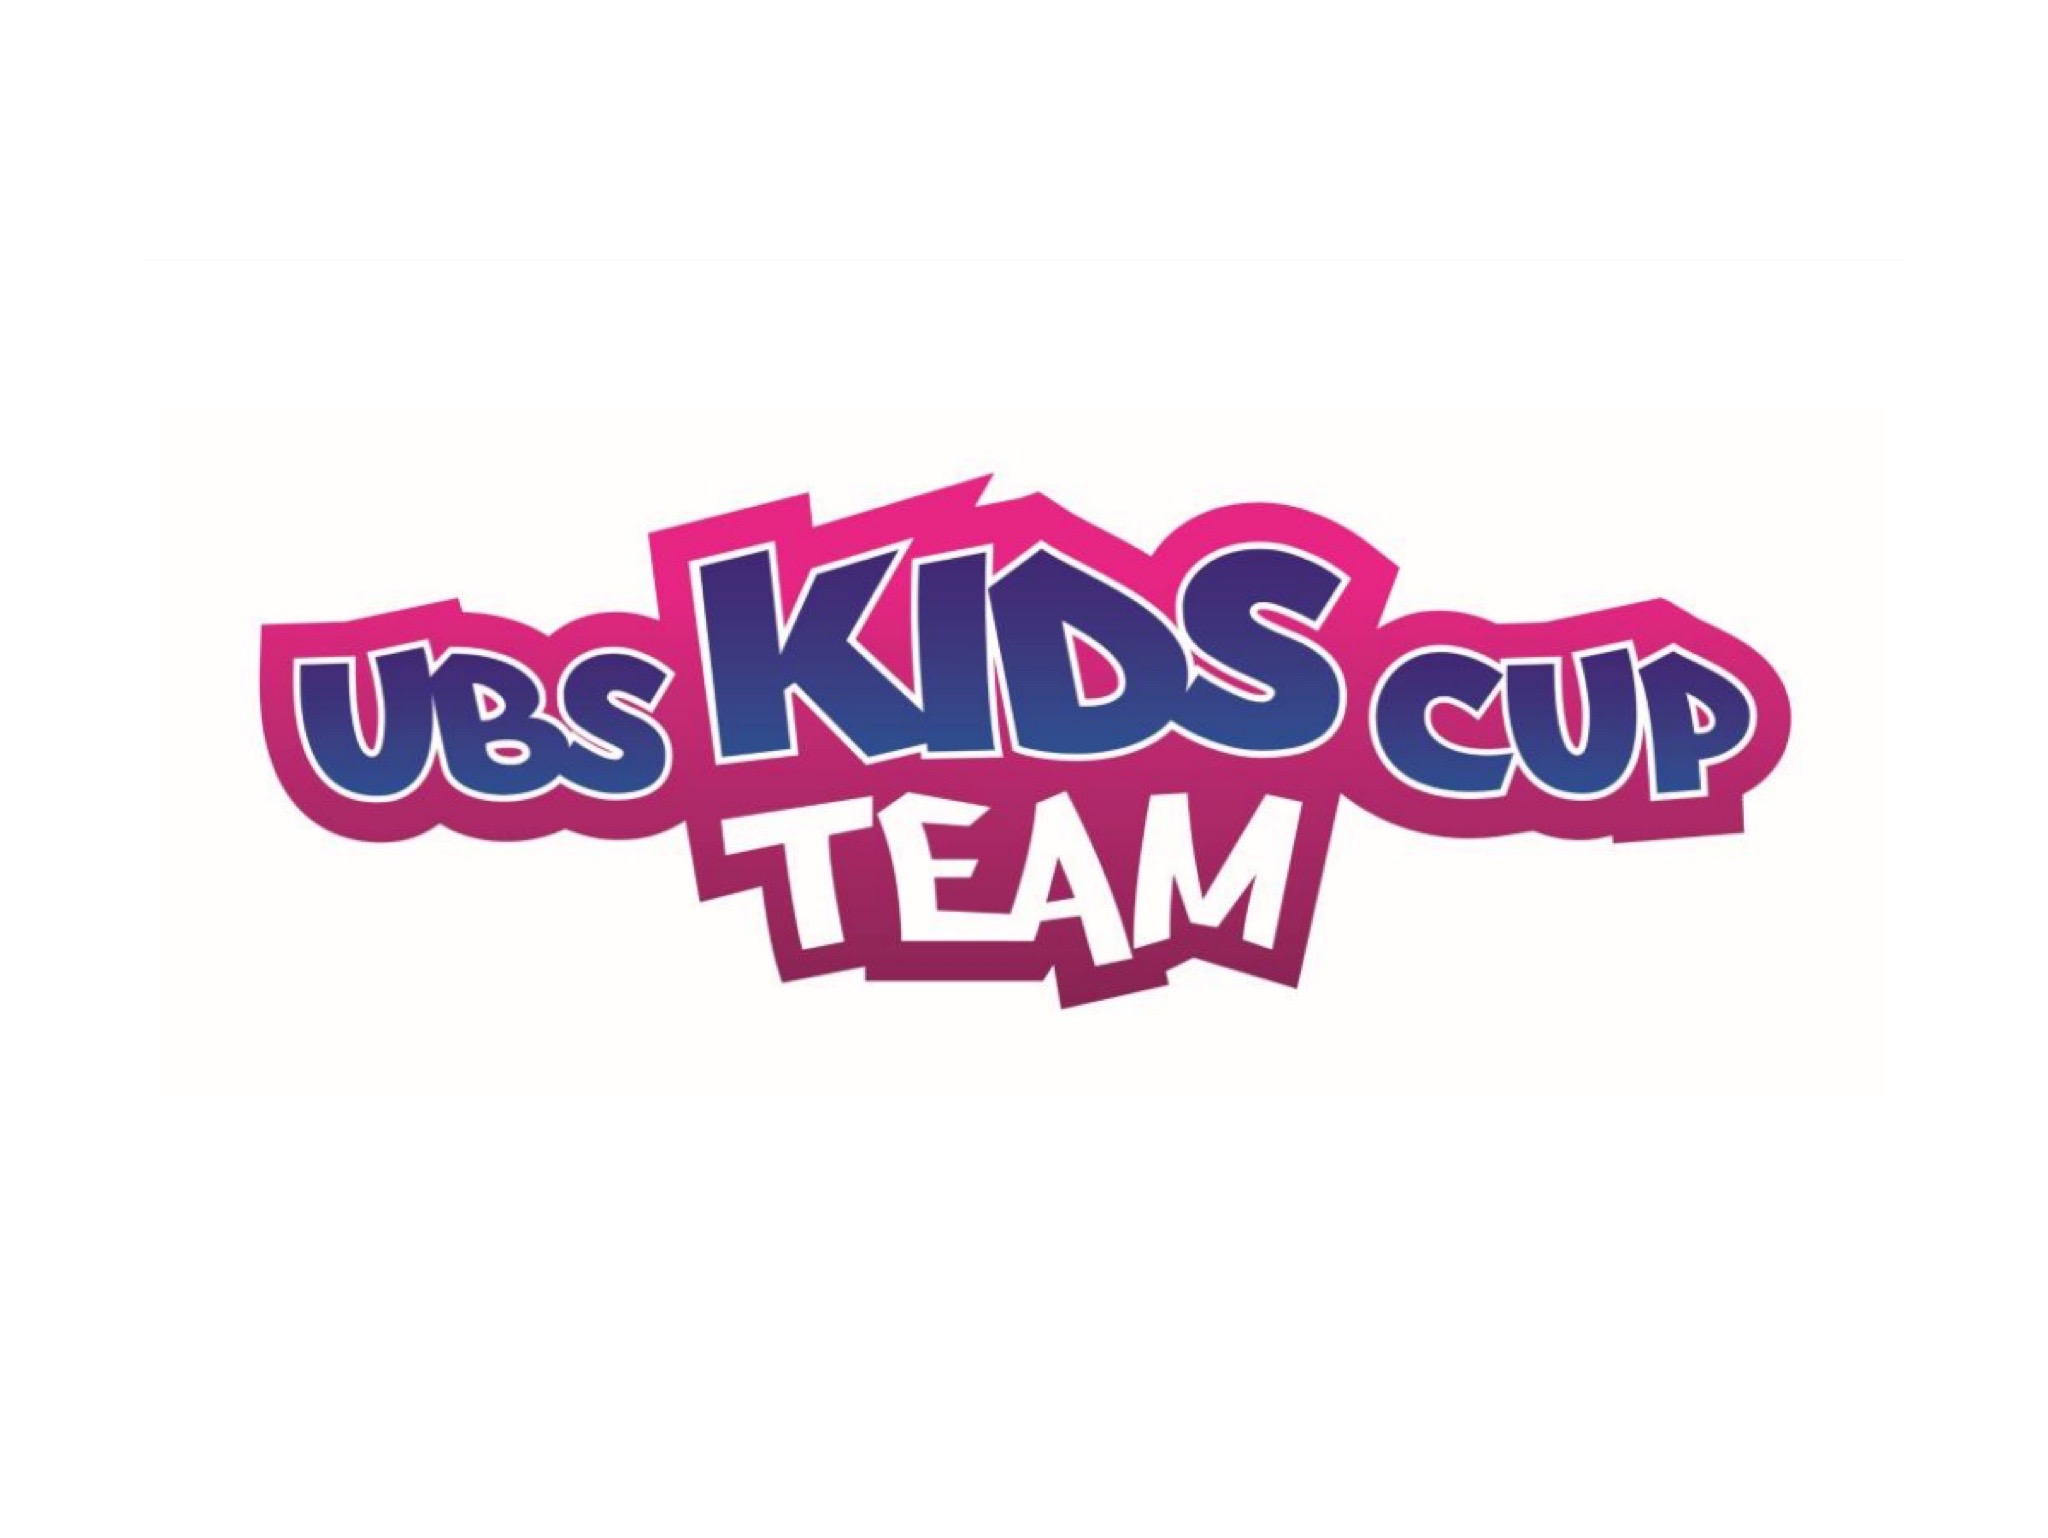 UBS Kids Cup Team (lokale Ausscheidung)